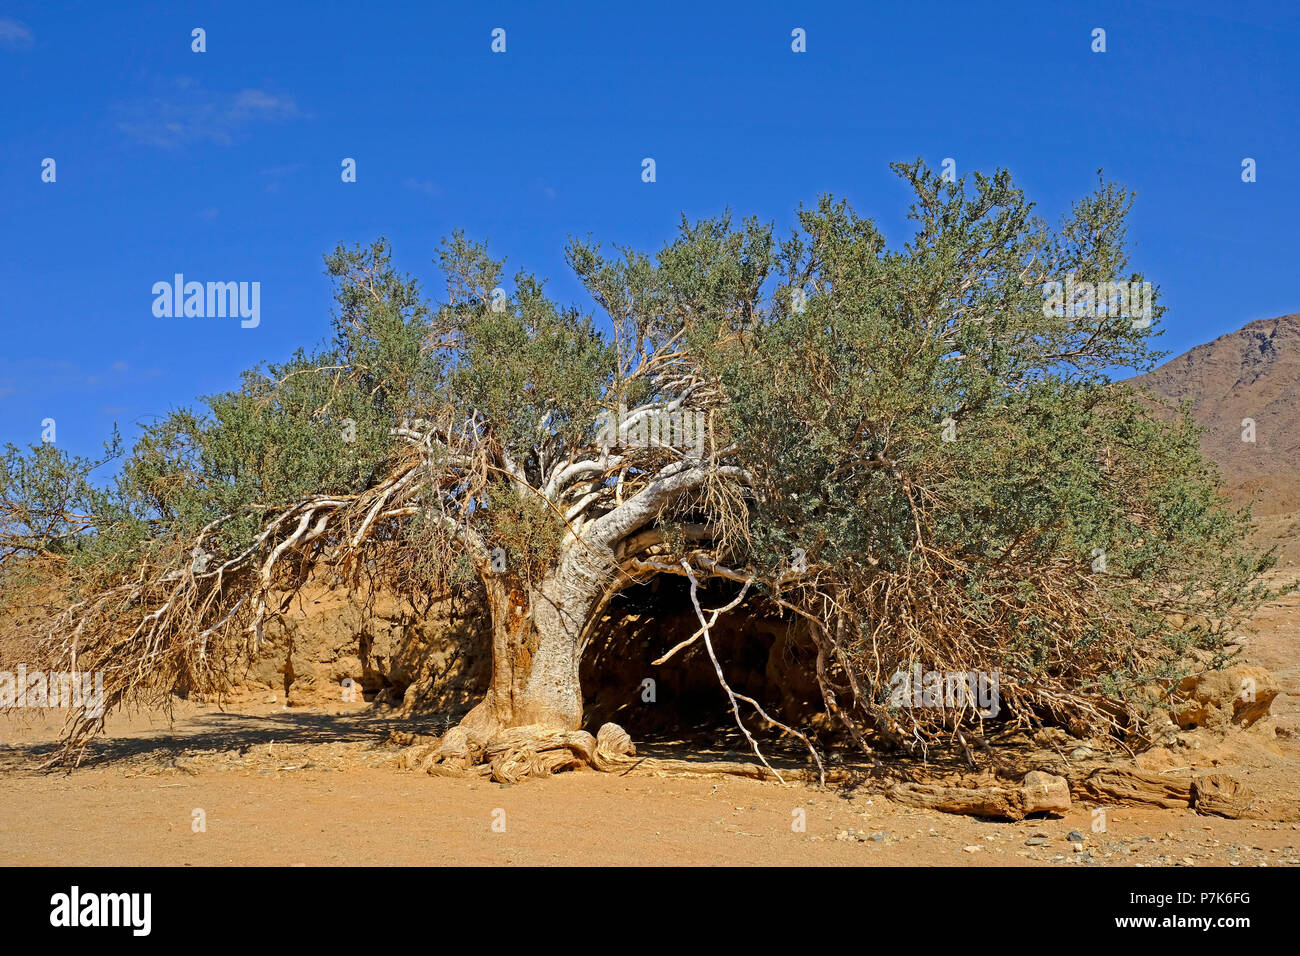 Viejo, retorcido árbol en roca arenosa cueva en el cauce del río Orange / Oranjerivier (borde río) en Richtersveld, Namaqua, Sudáfrica Foto de stock